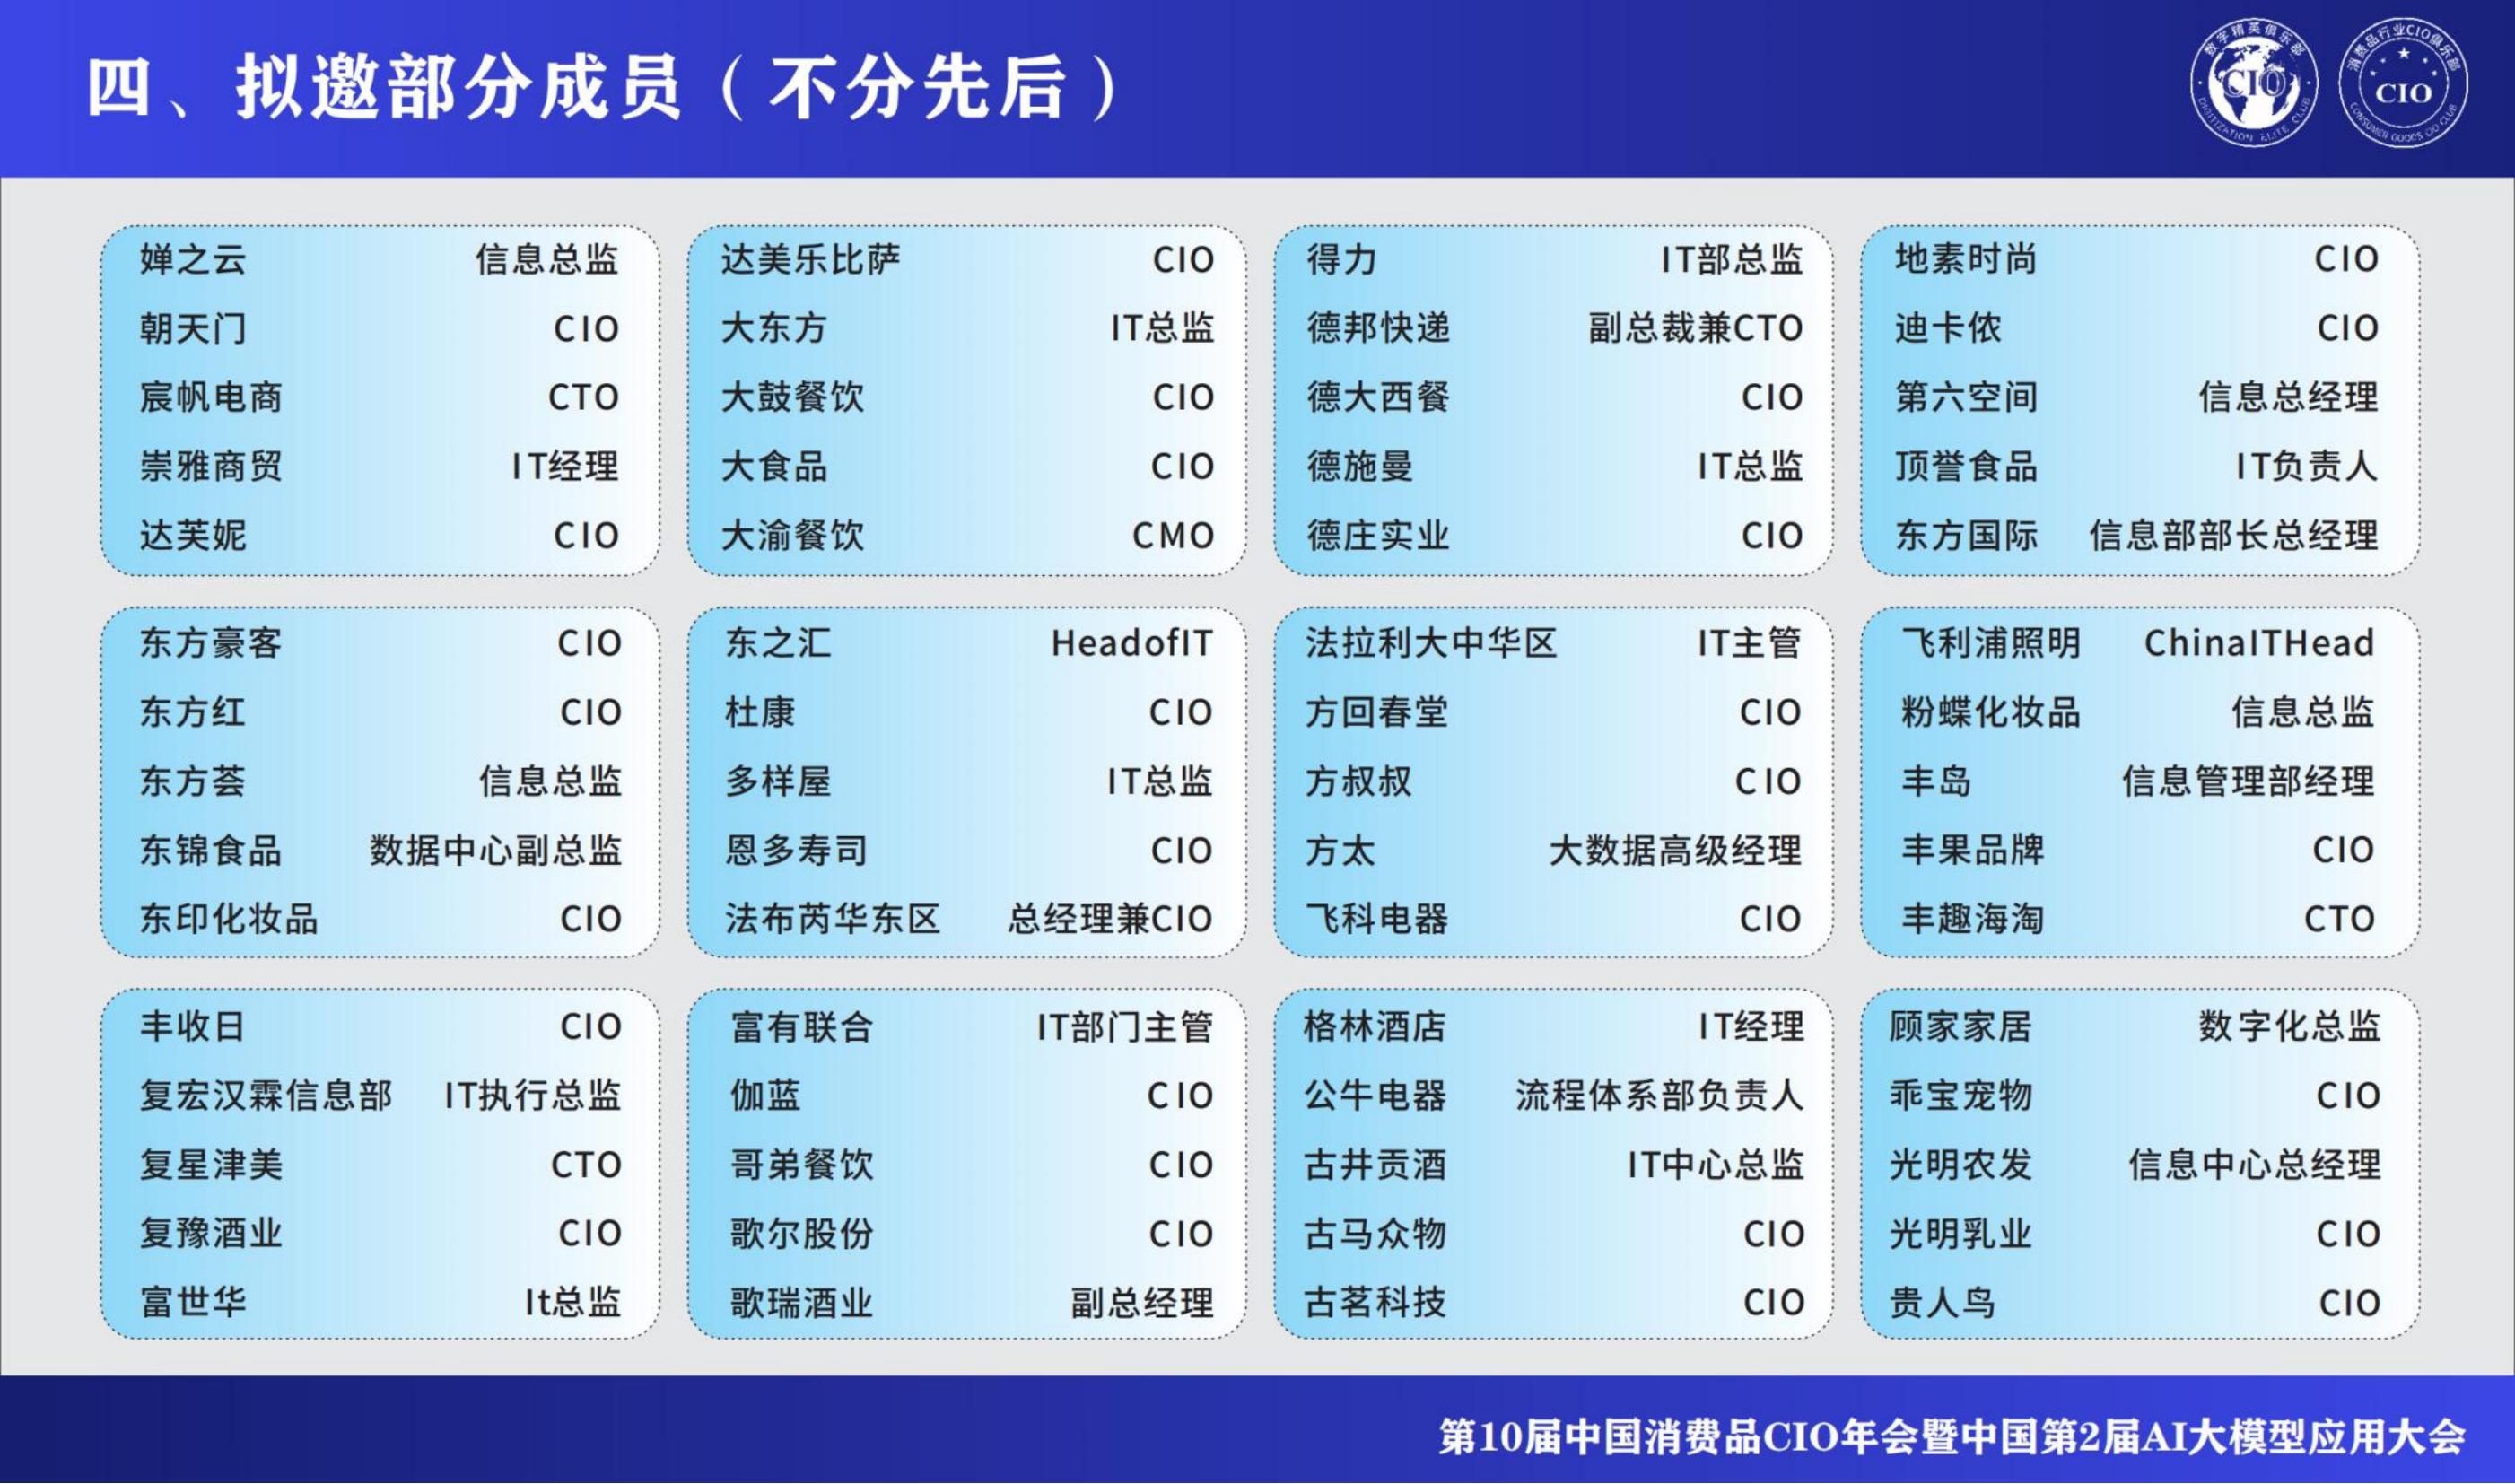 第10届中国消费品CIO大会暨第2届中国AI大模型应用大会